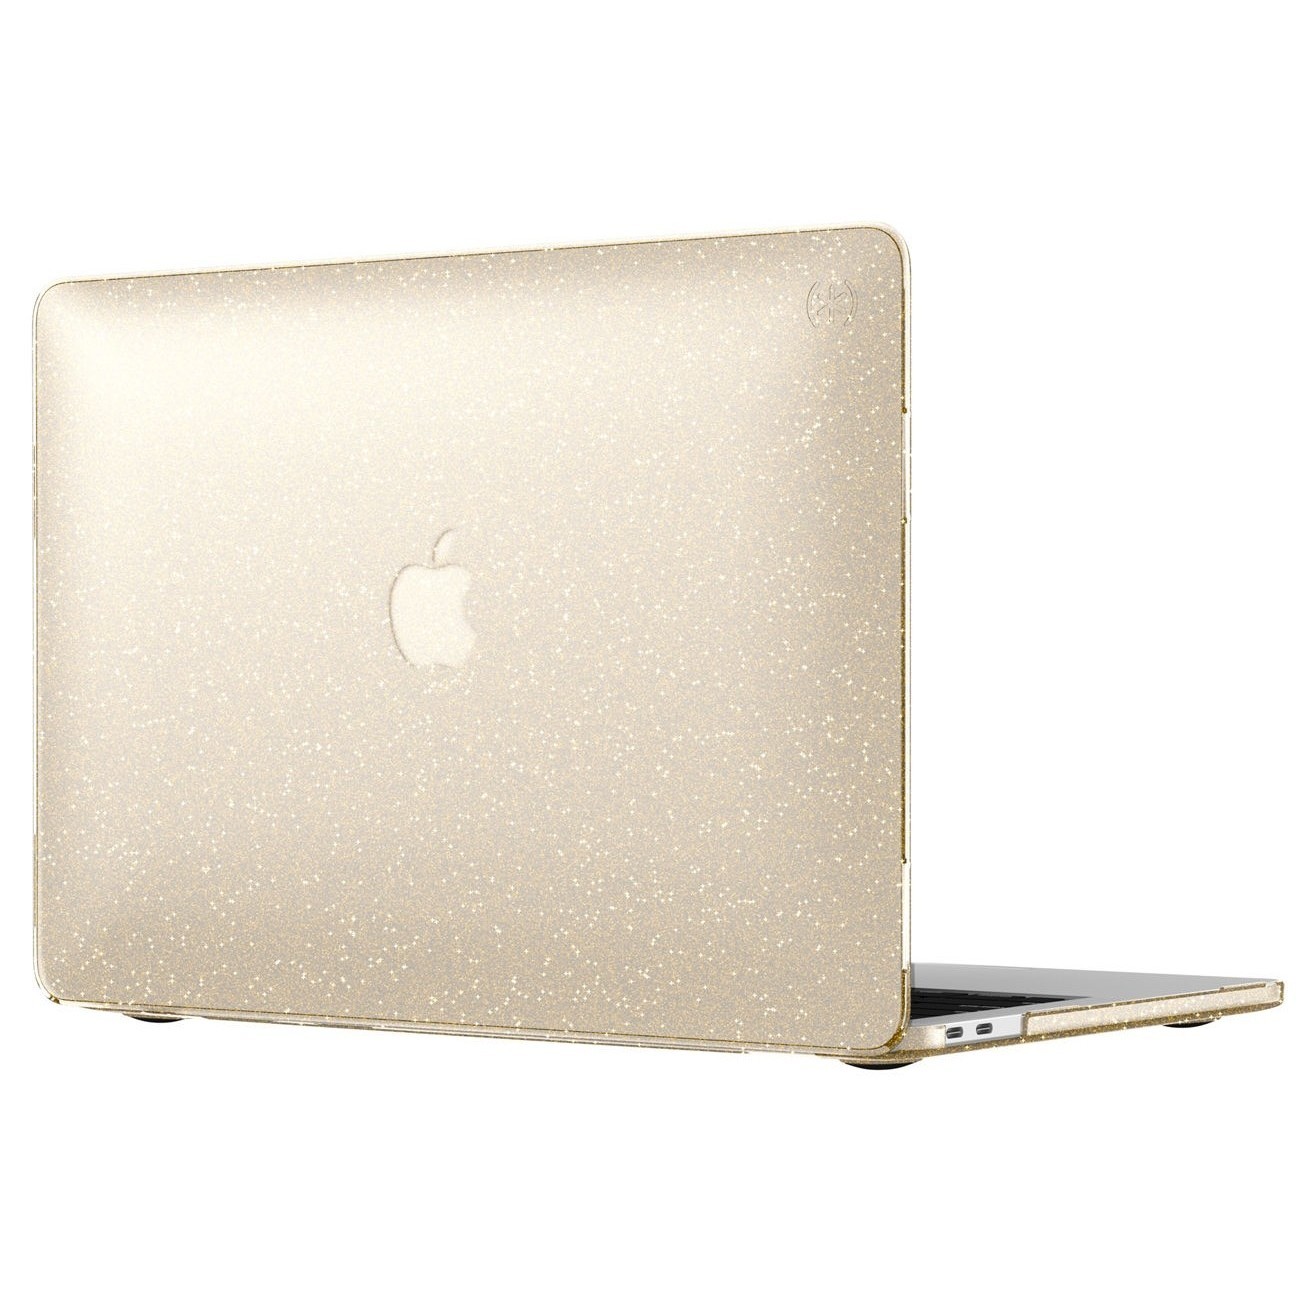 Review apple 13 macbook pro undermix